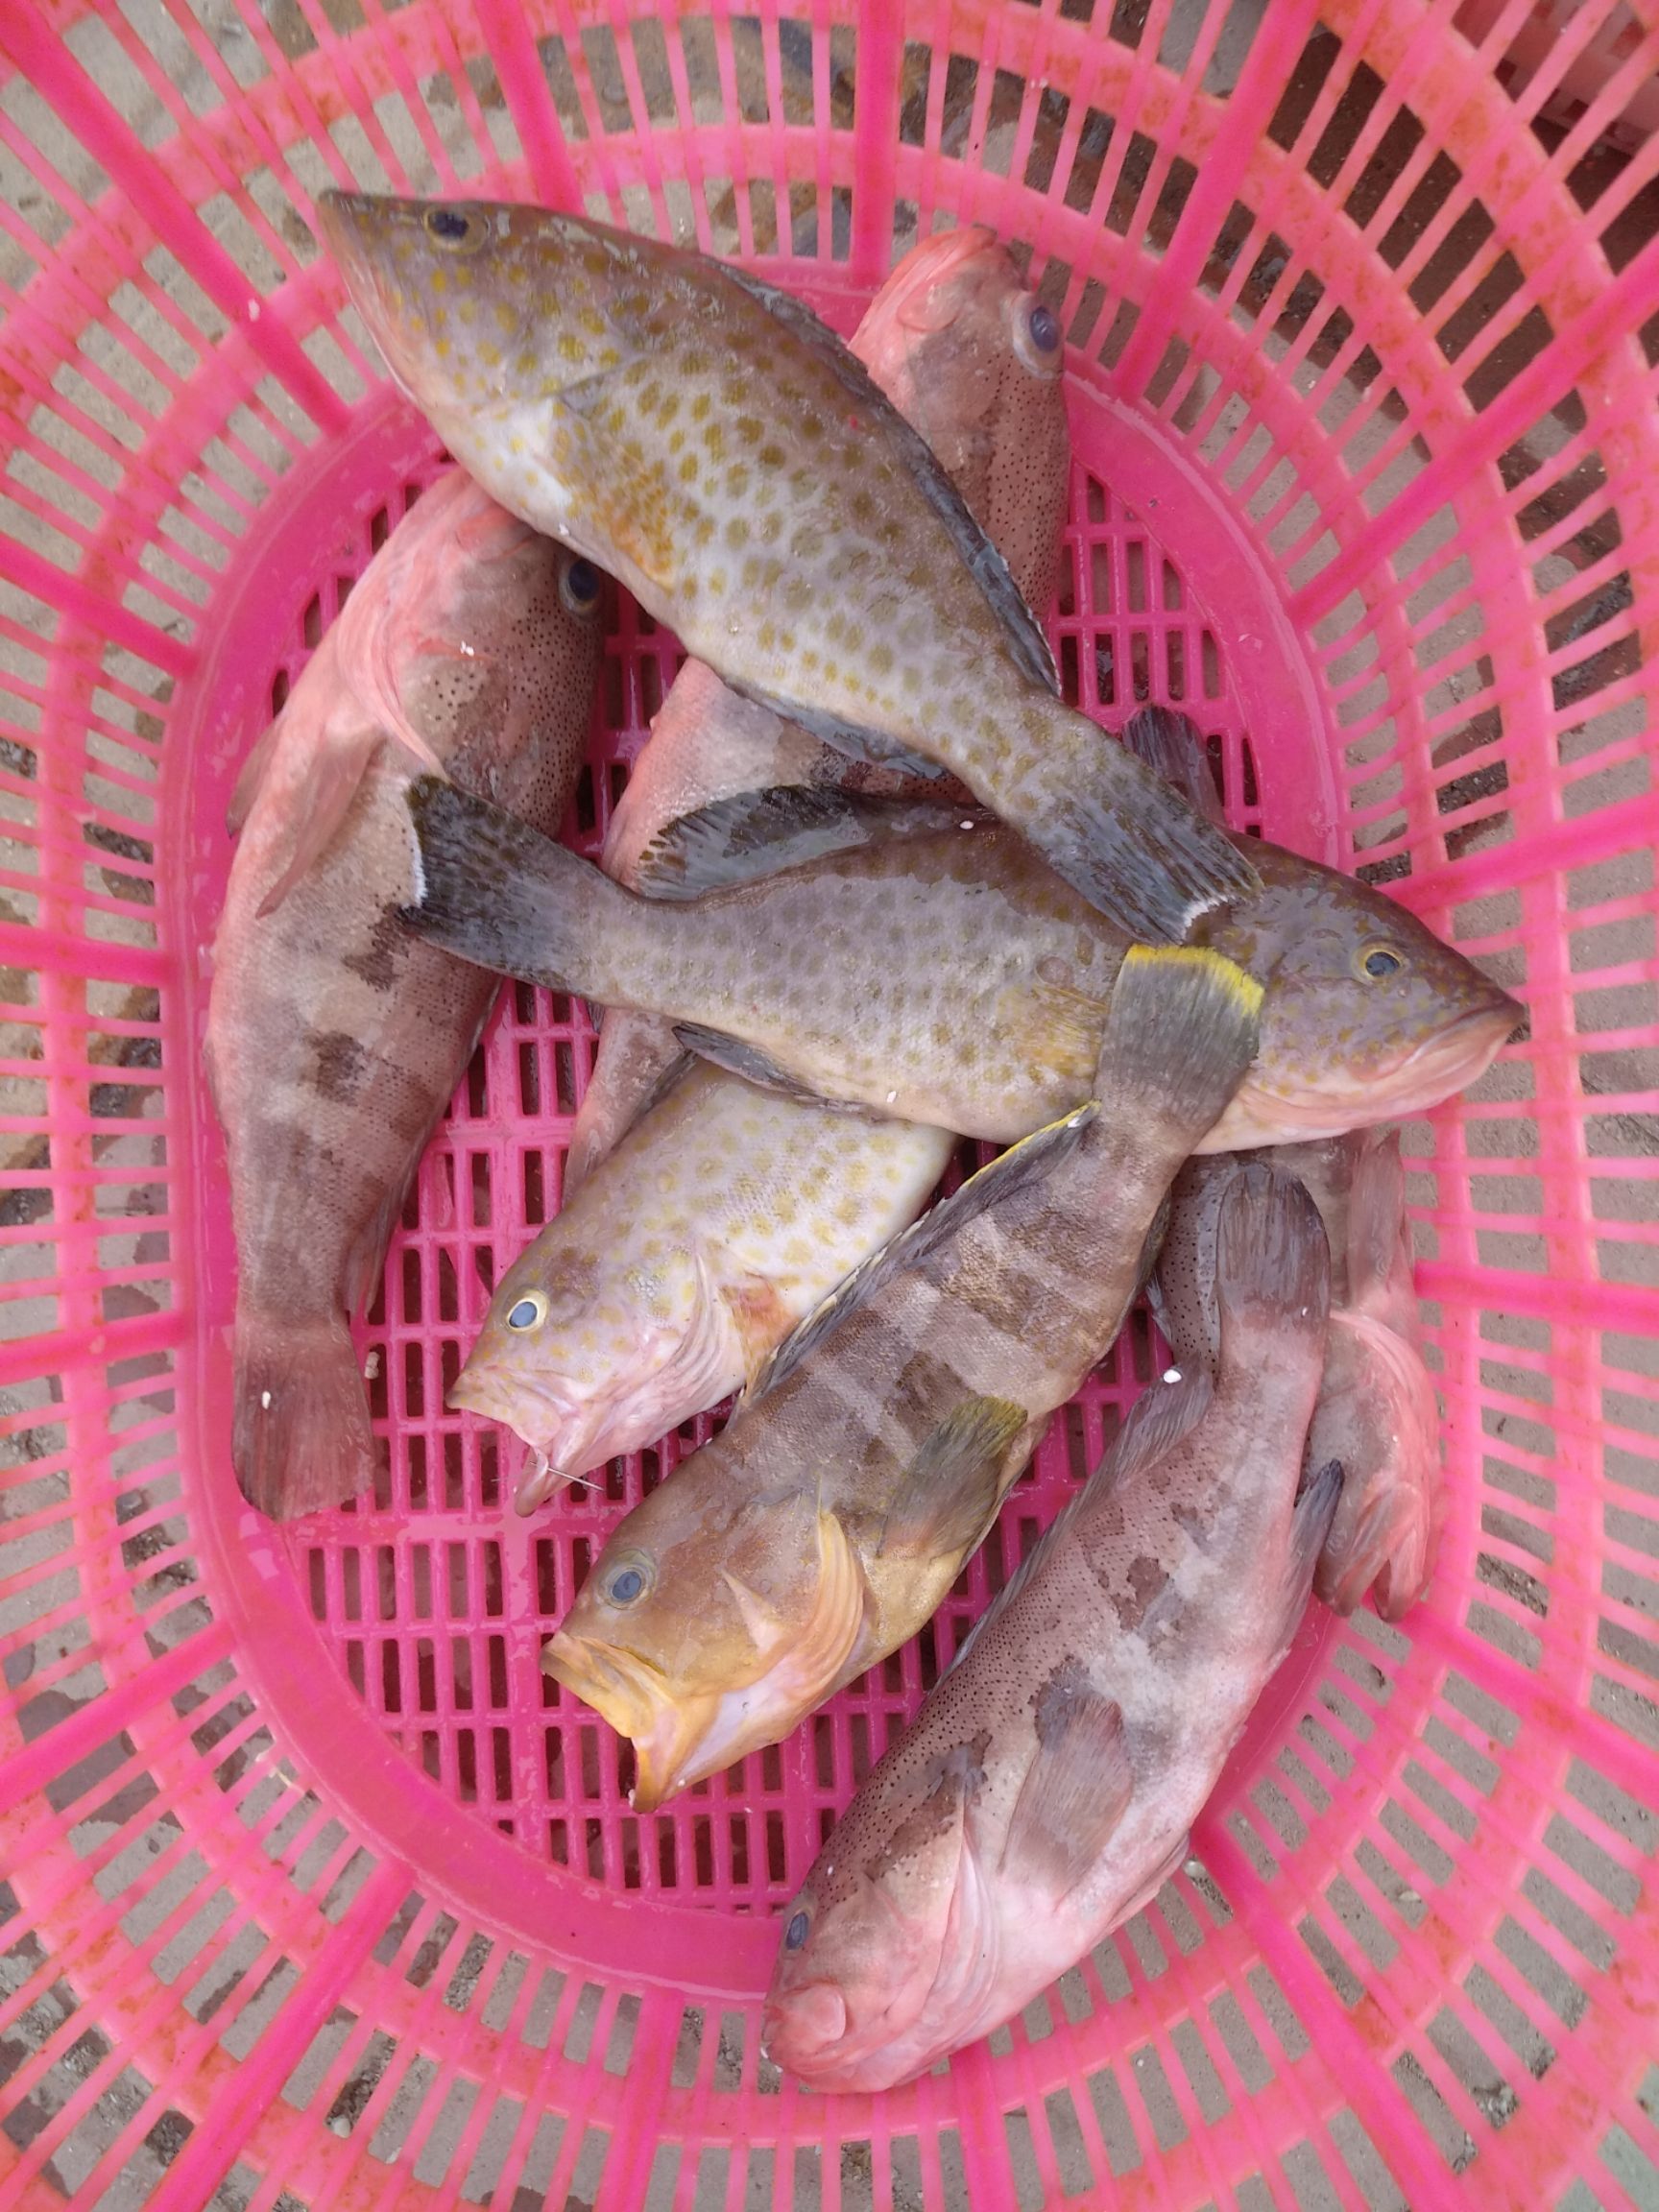 [赤点石斑批发] 石斑鱼价格35元/斤 - 惠农网